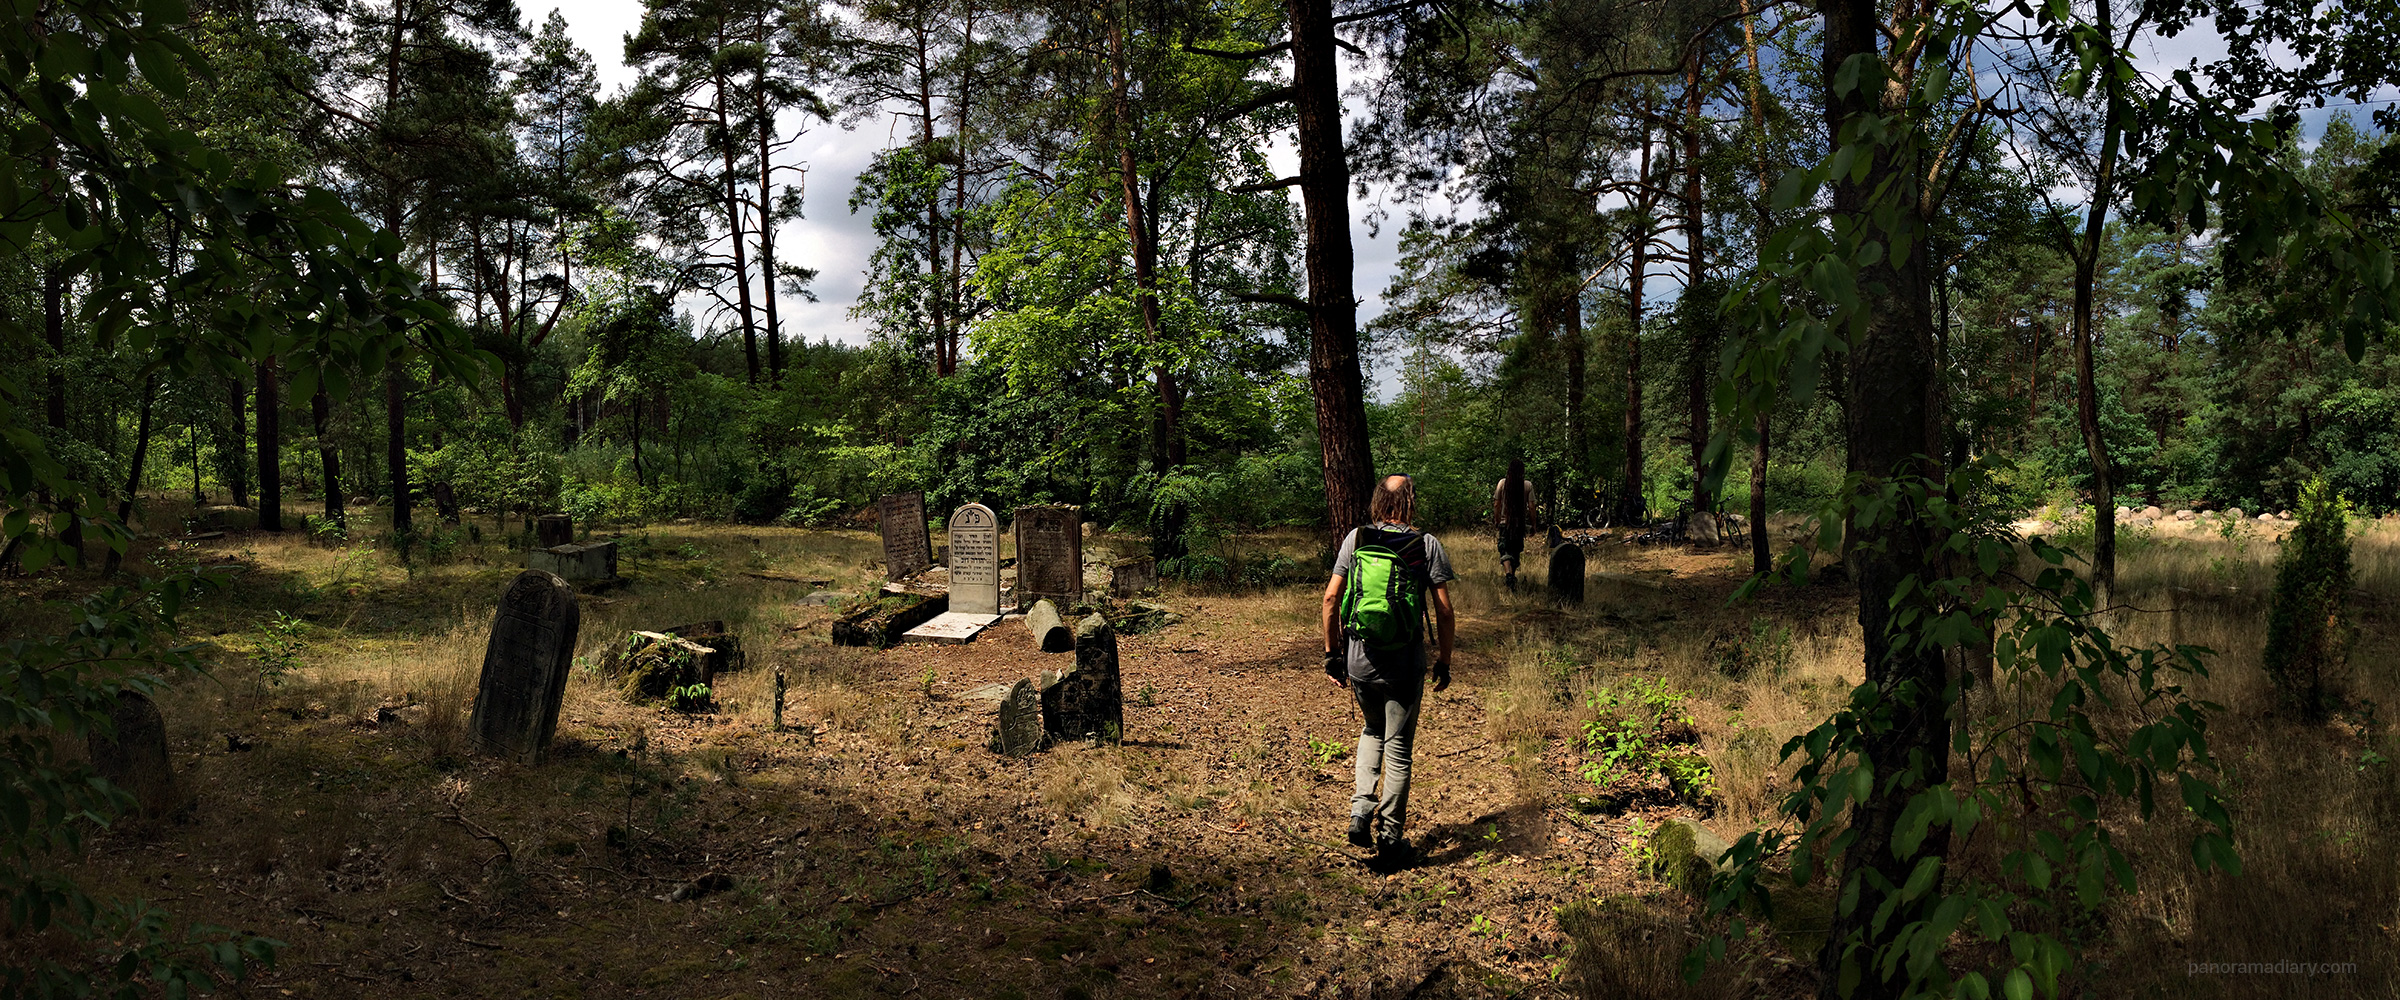 Jewish cemetery Otwock | PANORAMA DIARY